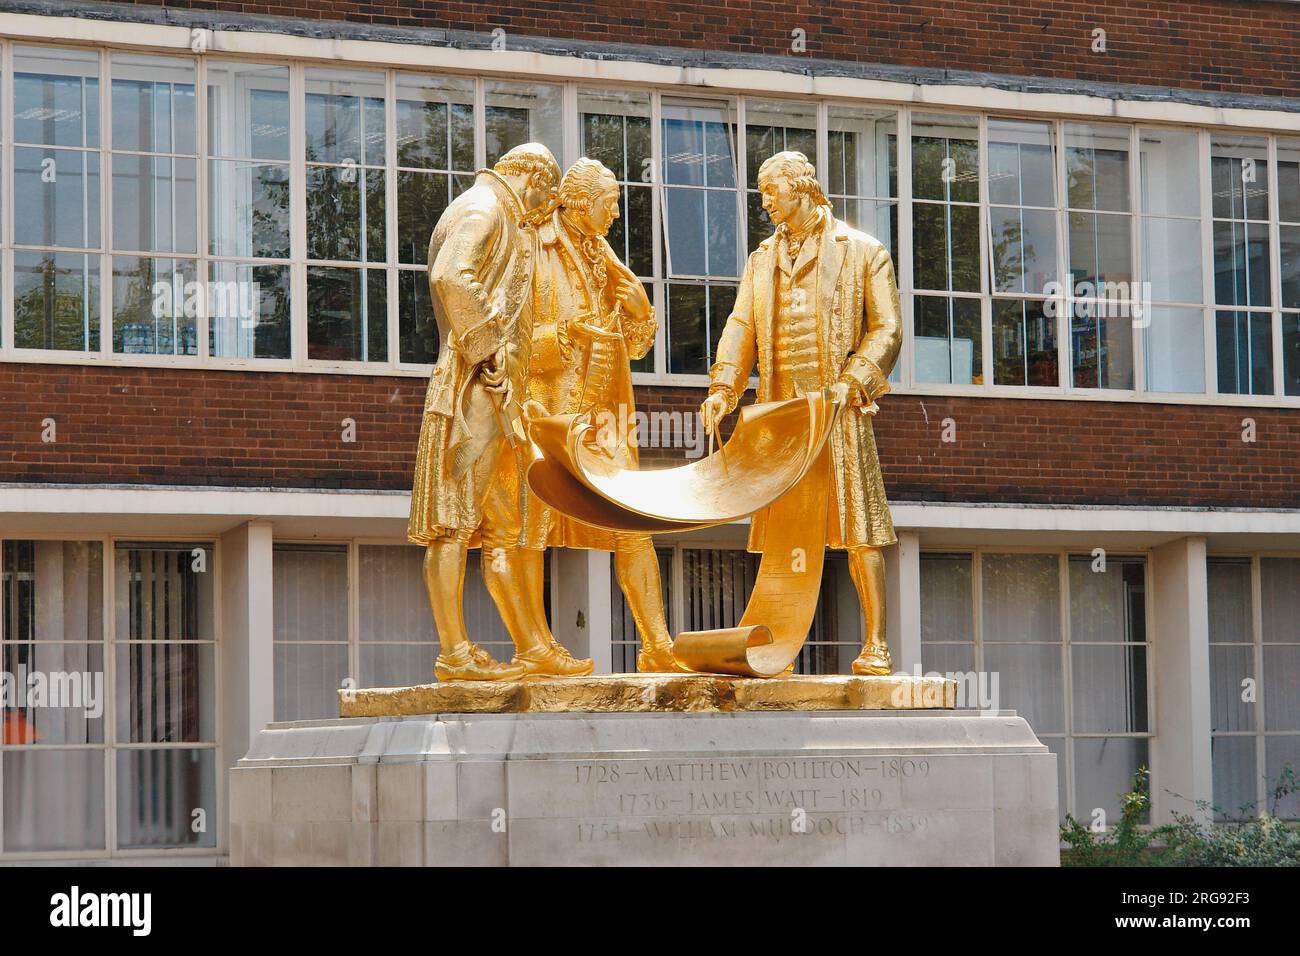 Die neu vergoldete Statue von Matthew Boulton, James Watt und William Murdoch, vor dem House of Sport auf der Broad Street, Birmingham. Die Statue ist in Bronze mit goldenem Finish und stammt von William Bloye. Es wurde 1956 enthüllt. Die drei dargestellten Männer waren Pioniere der industriellen Revolution im späten 18. Jahrhundert, und es wird gezeigt, wie sie über Motorenpläne diskutieren. Die Statue hat zwei lokale Spitznamen: Die Golden Boys und die Teppichverkäufer. Stockfoto